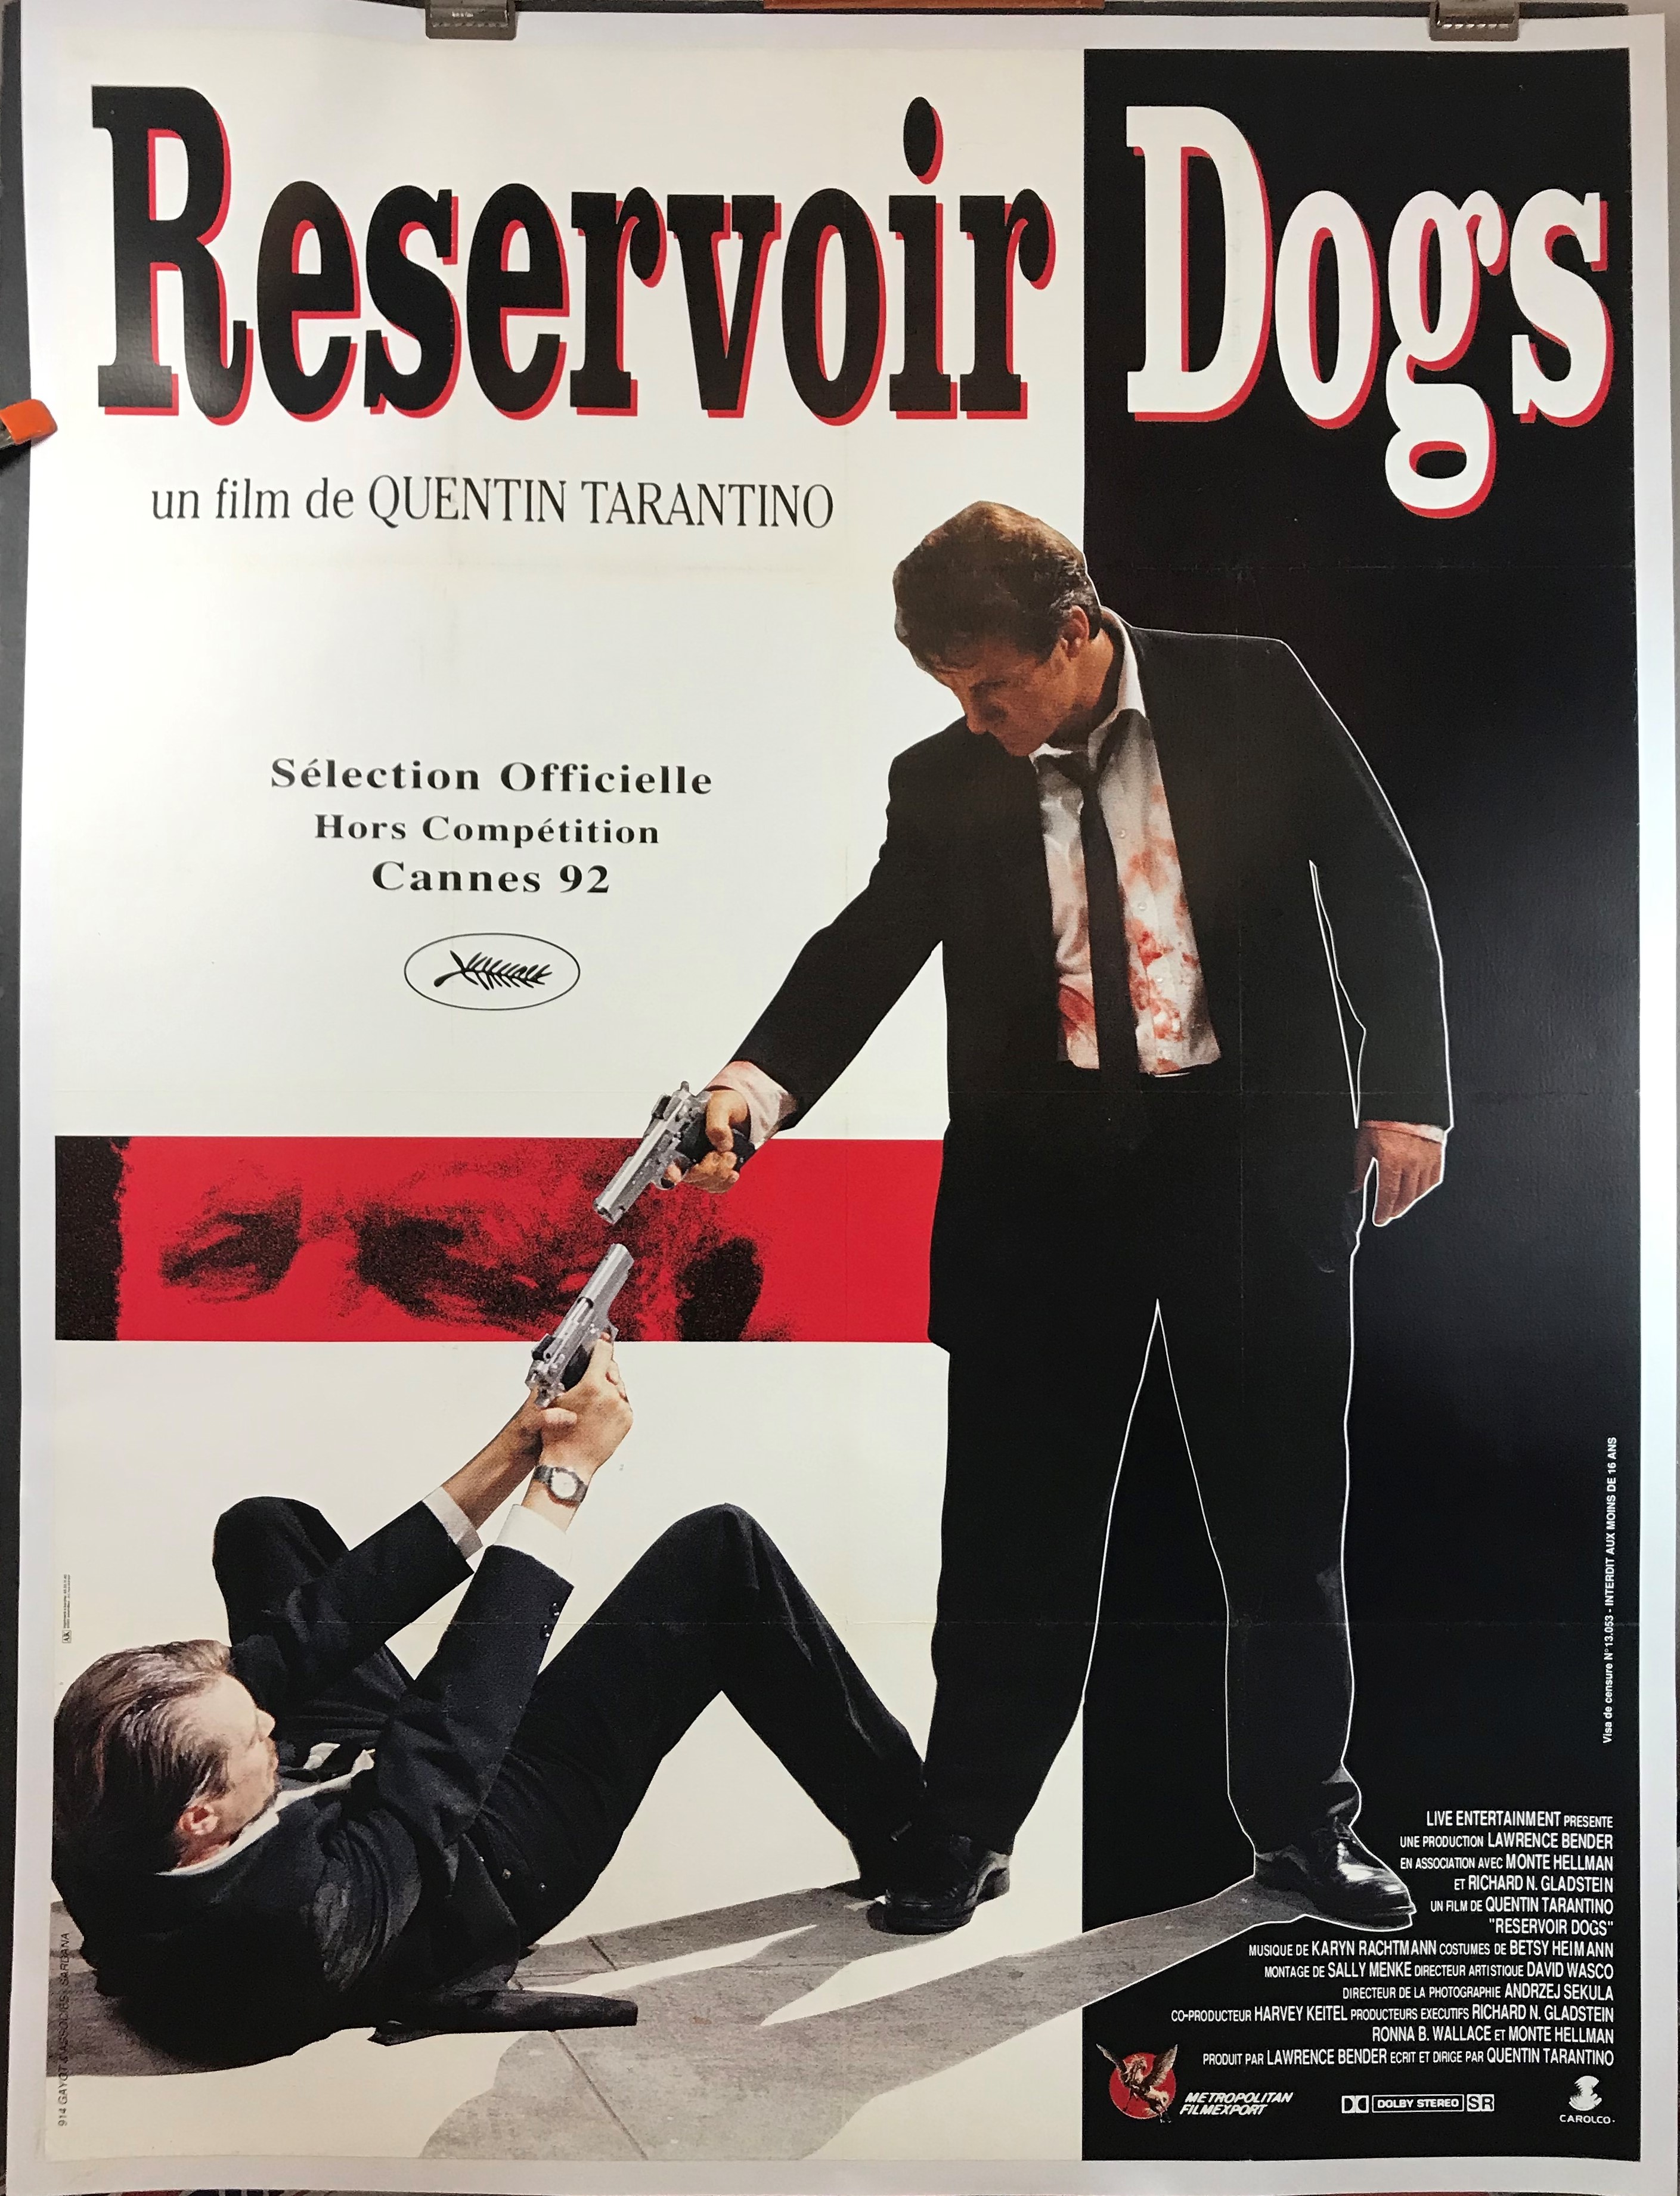 Resizor dogs movie sparkulsd